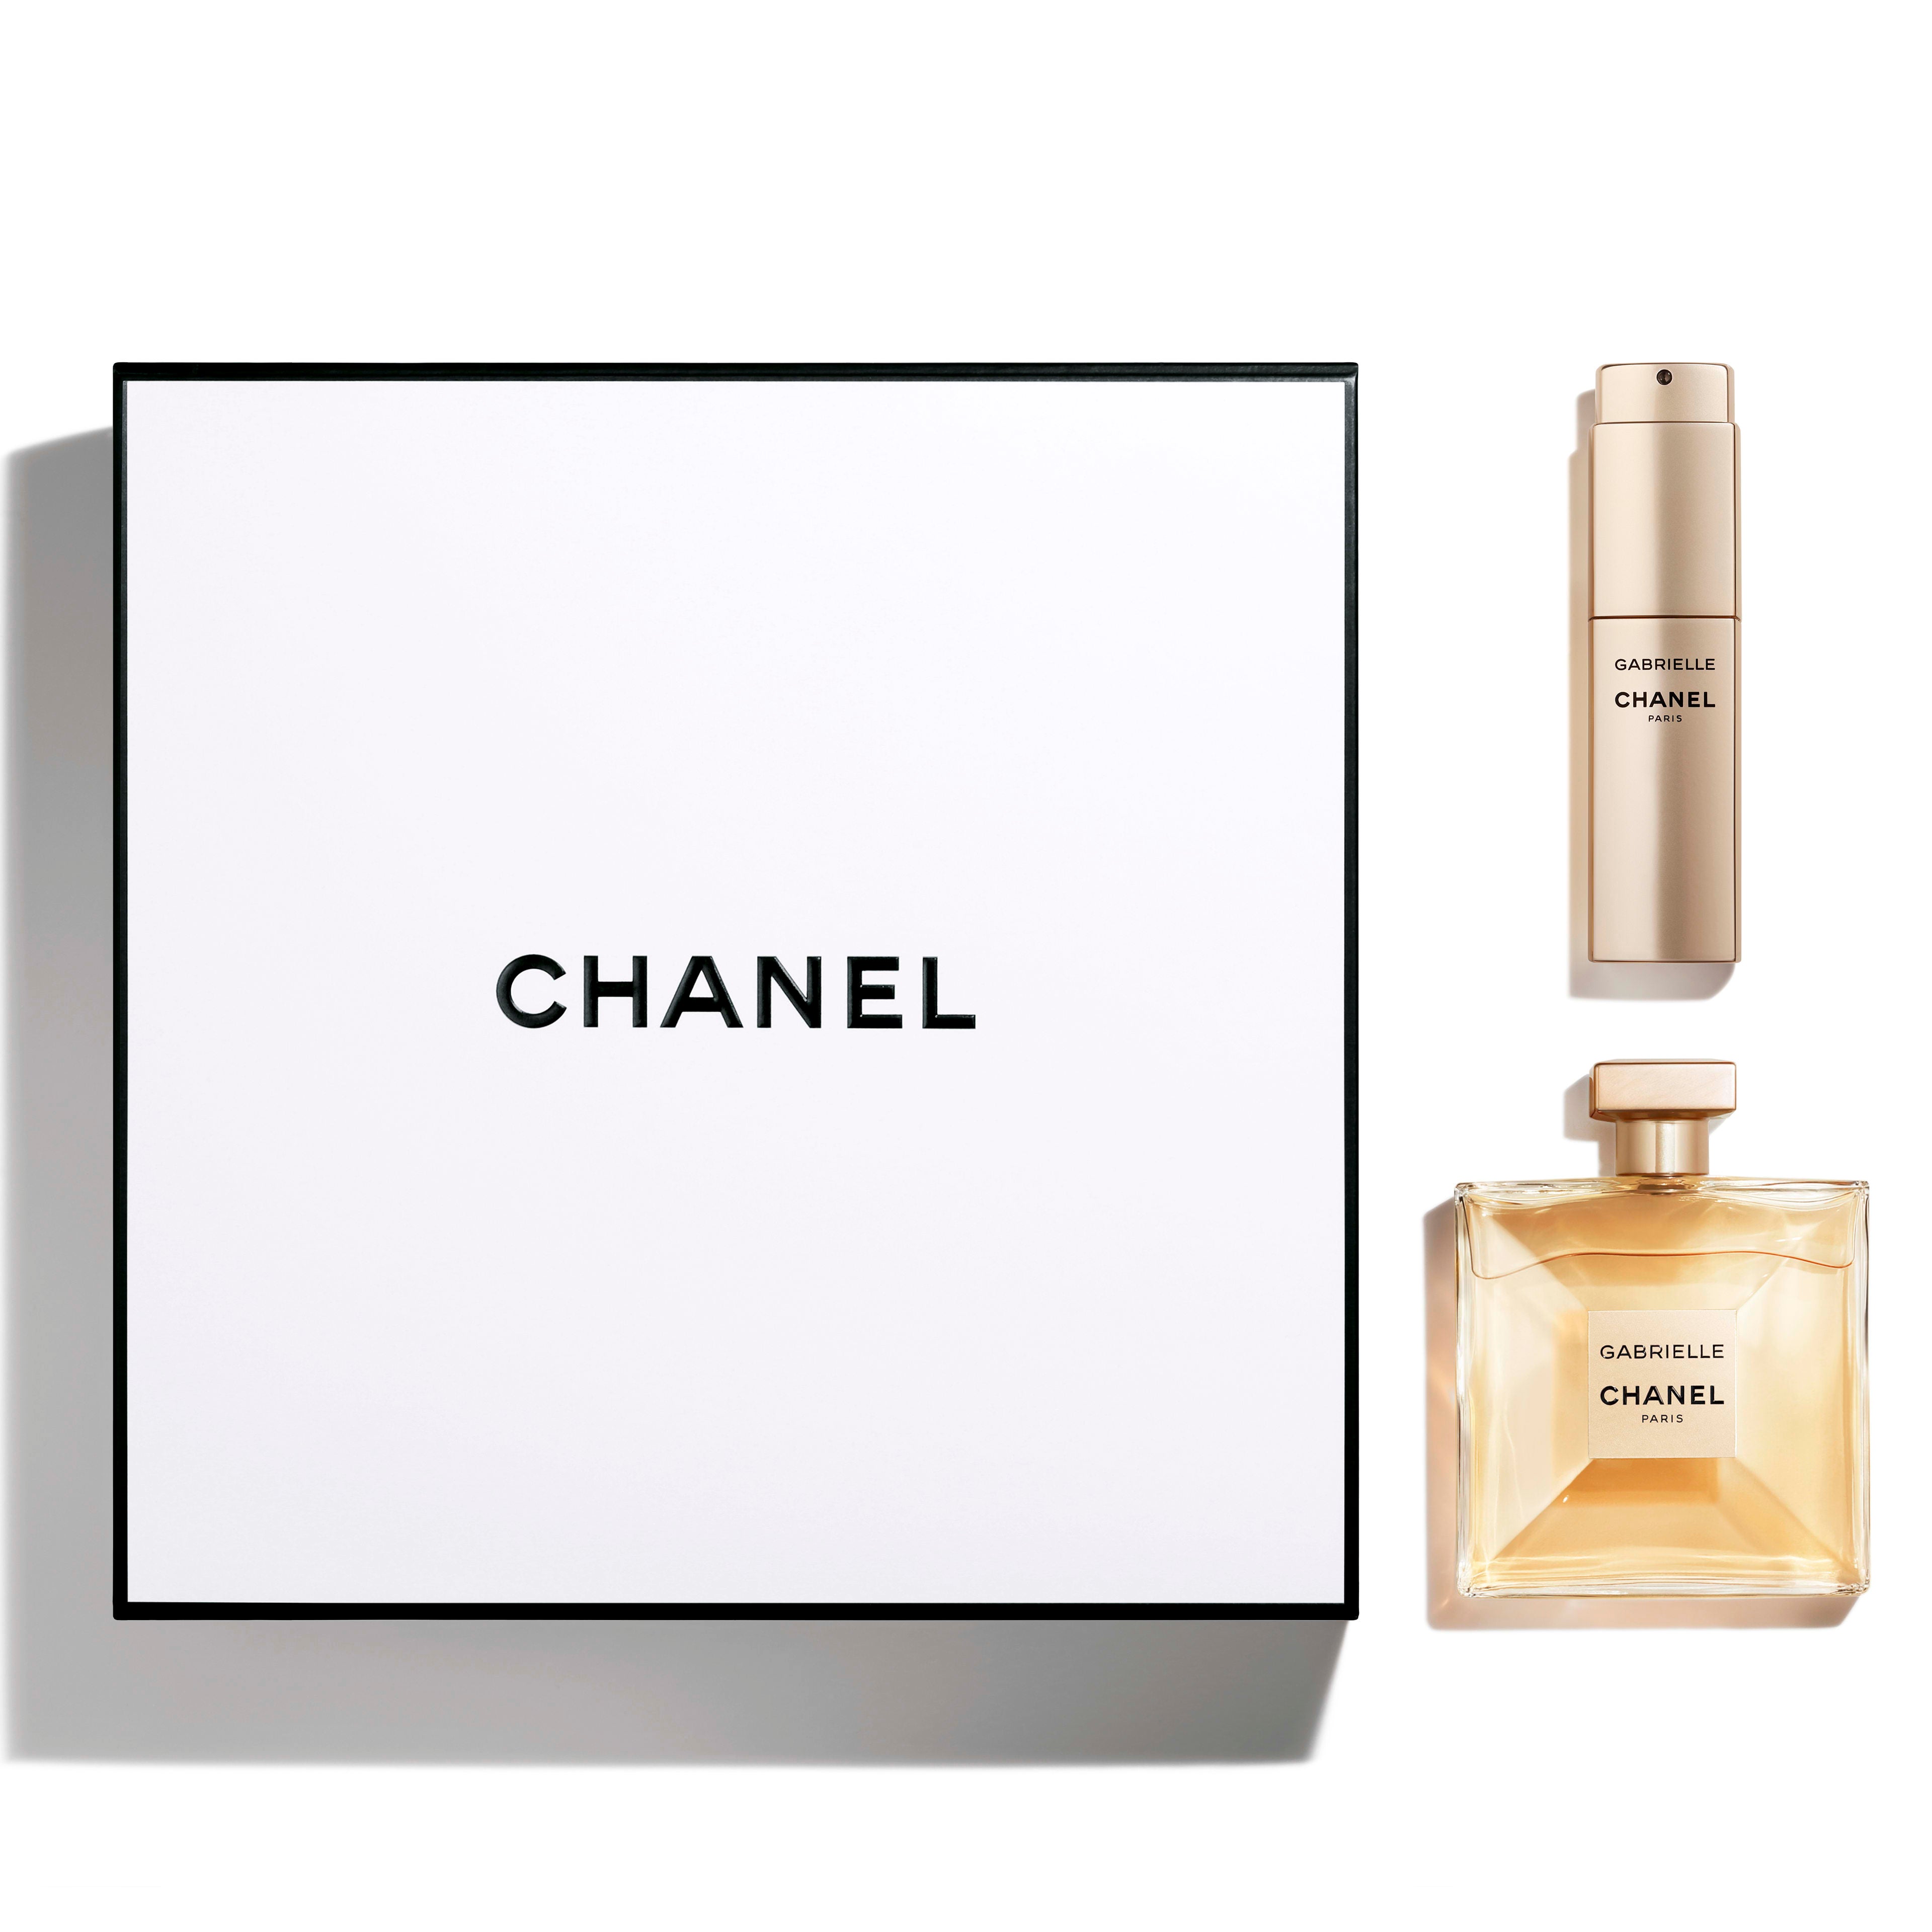 GABRIELLE CHANEL Eau de Parfum 3pcs Gift Set – always special